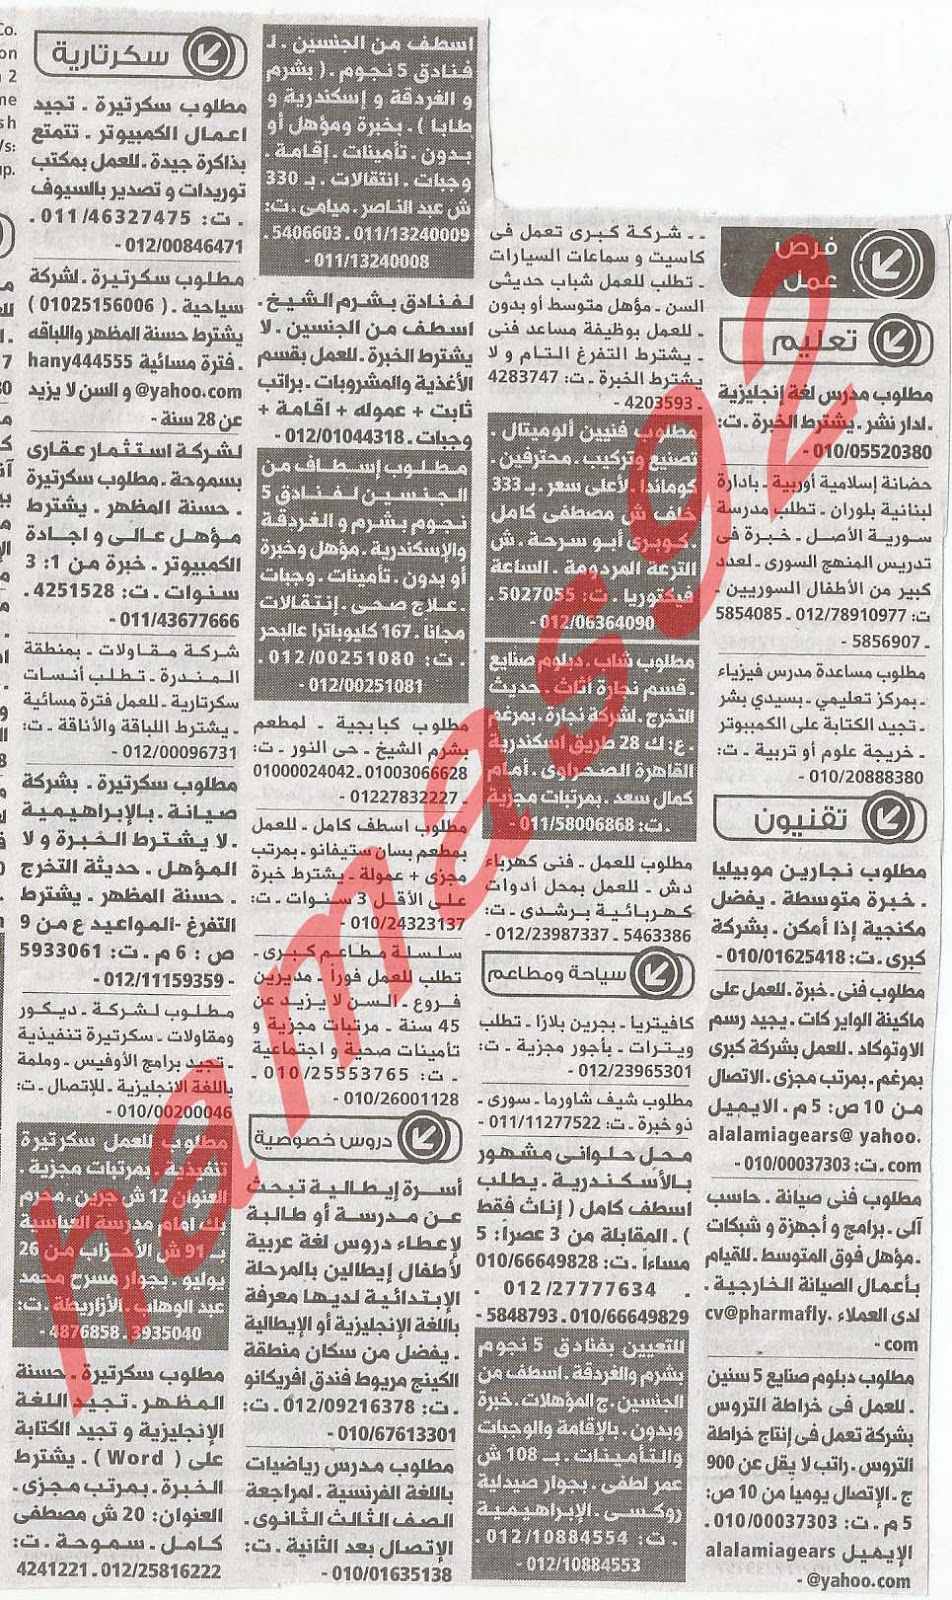 وظائف شاغرة من جريدة الوسيط الاسكندرية - مصر الاثنين 18/2/2013 %D9%88+%D8%B3+%D8%B3+1